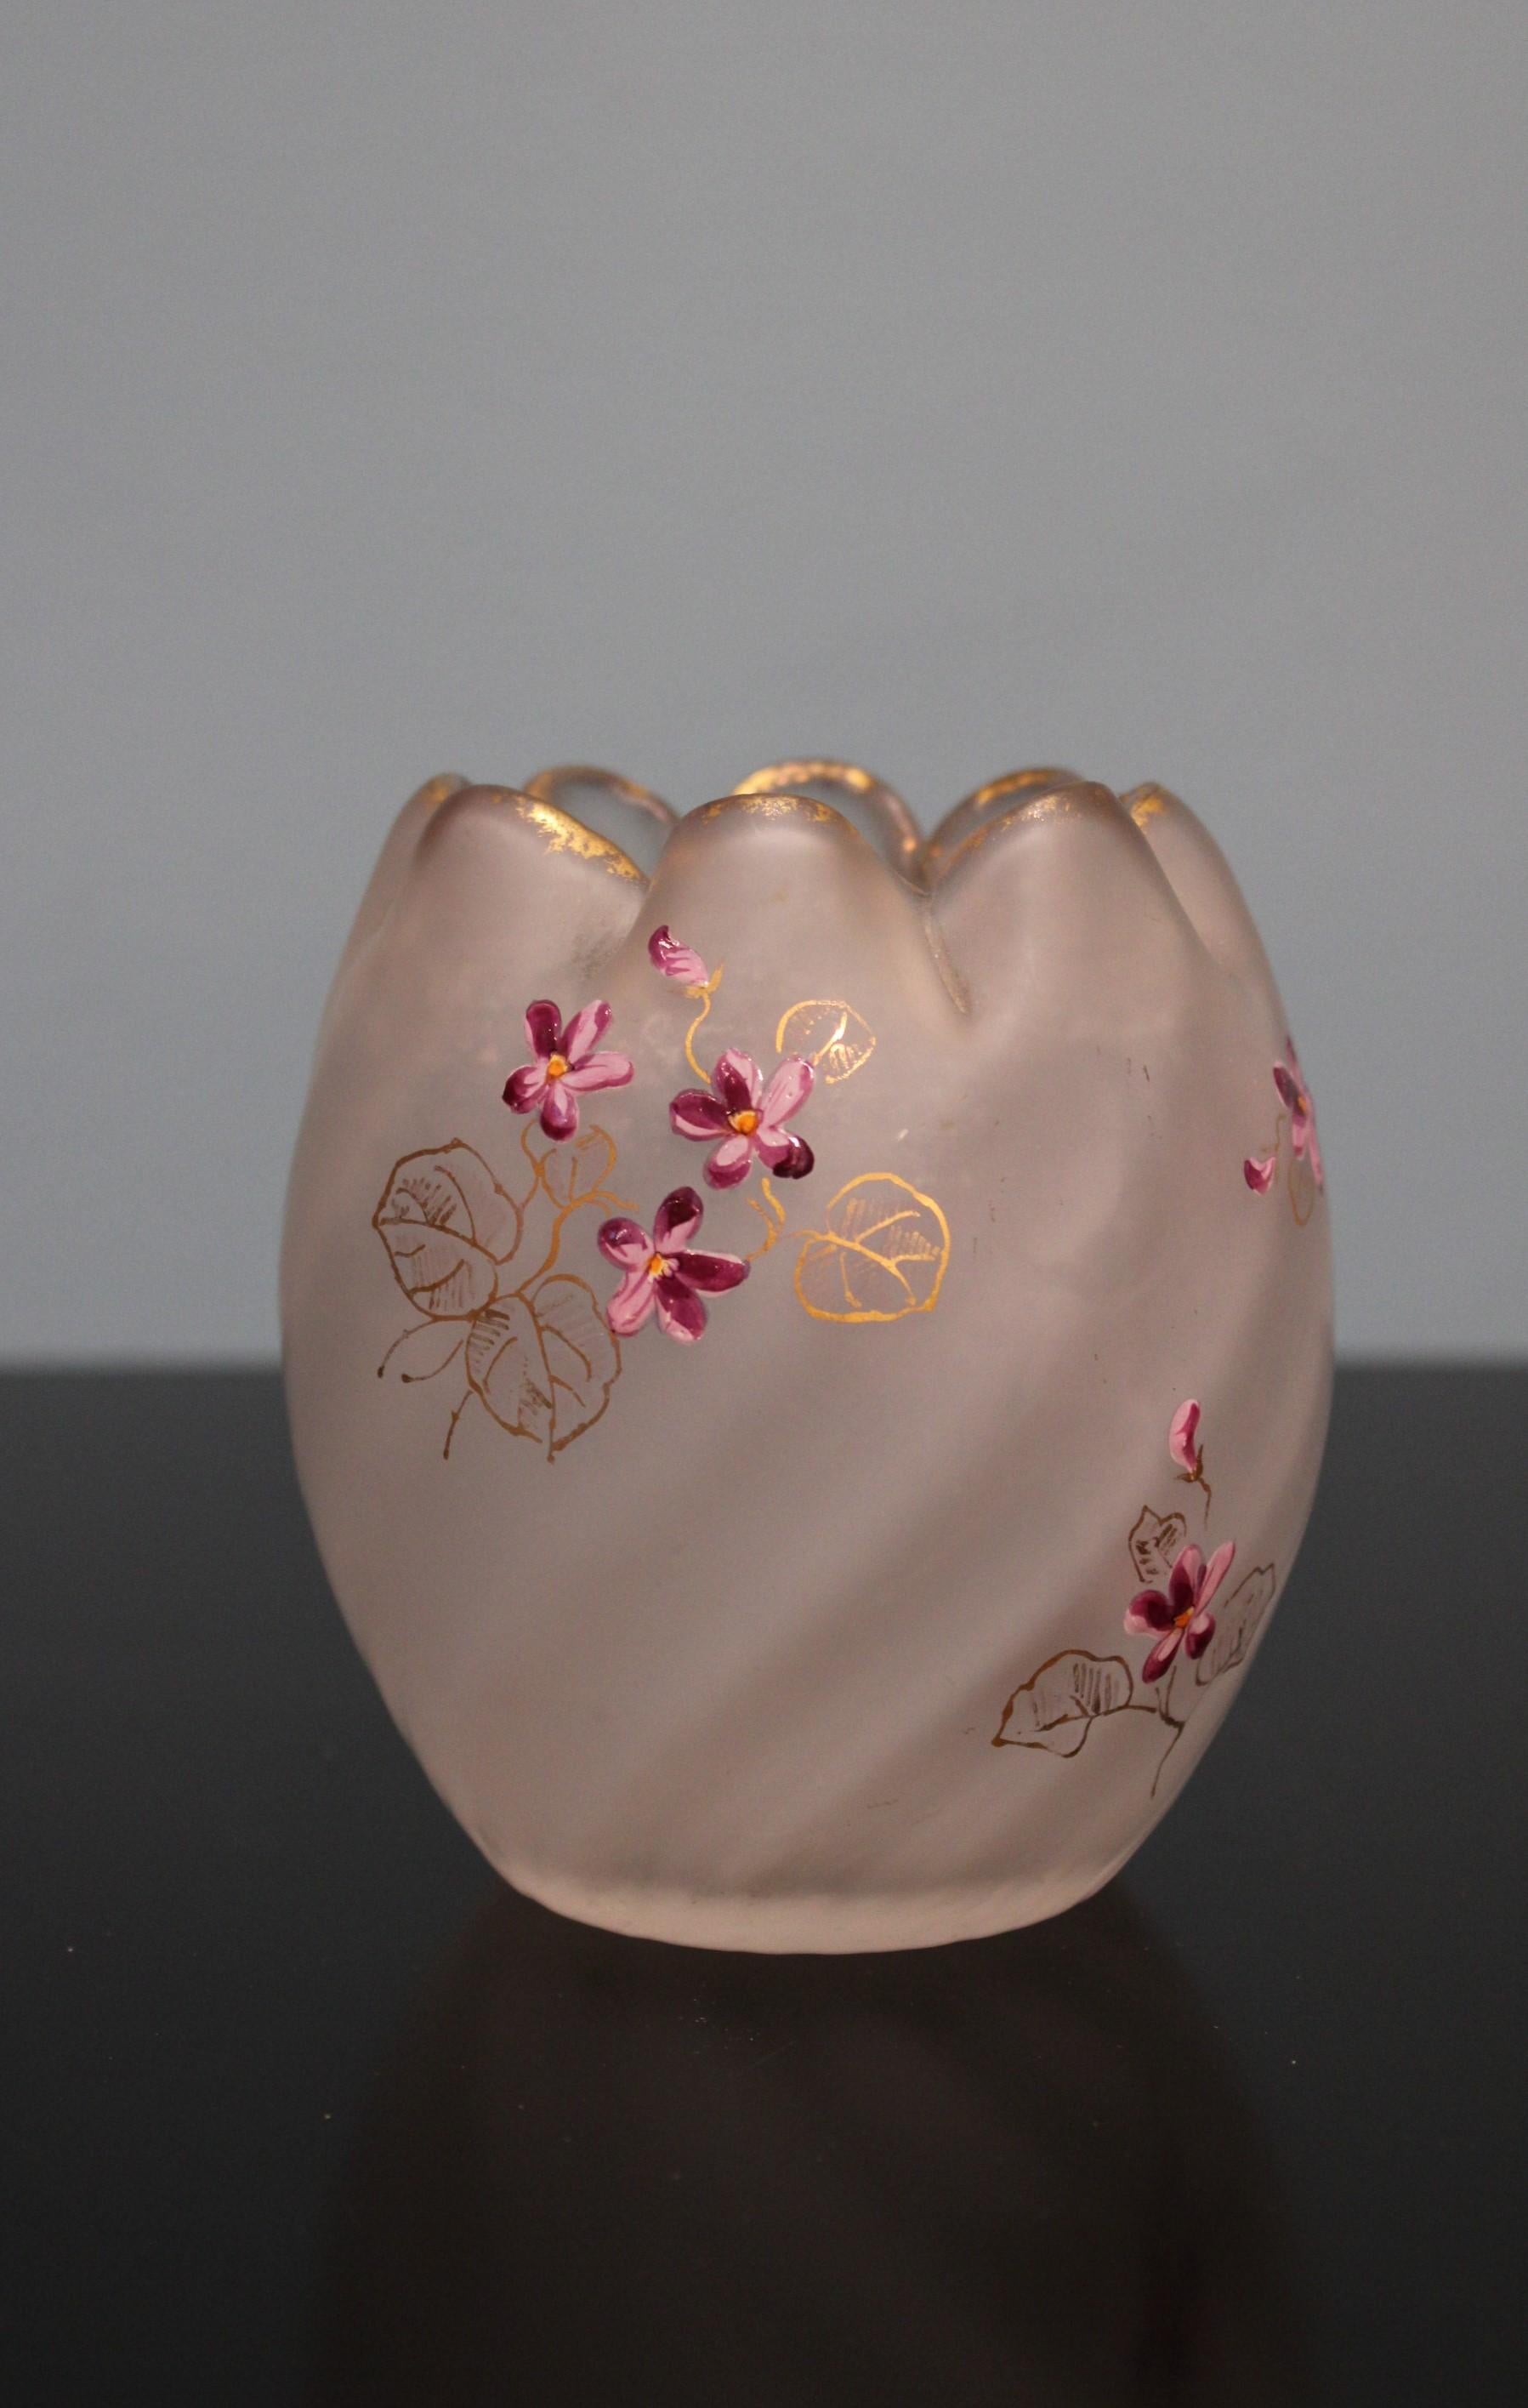 Vase en verre émaillé, de style Art nouveau.
Décoré de fleurs.
Circa 1900.